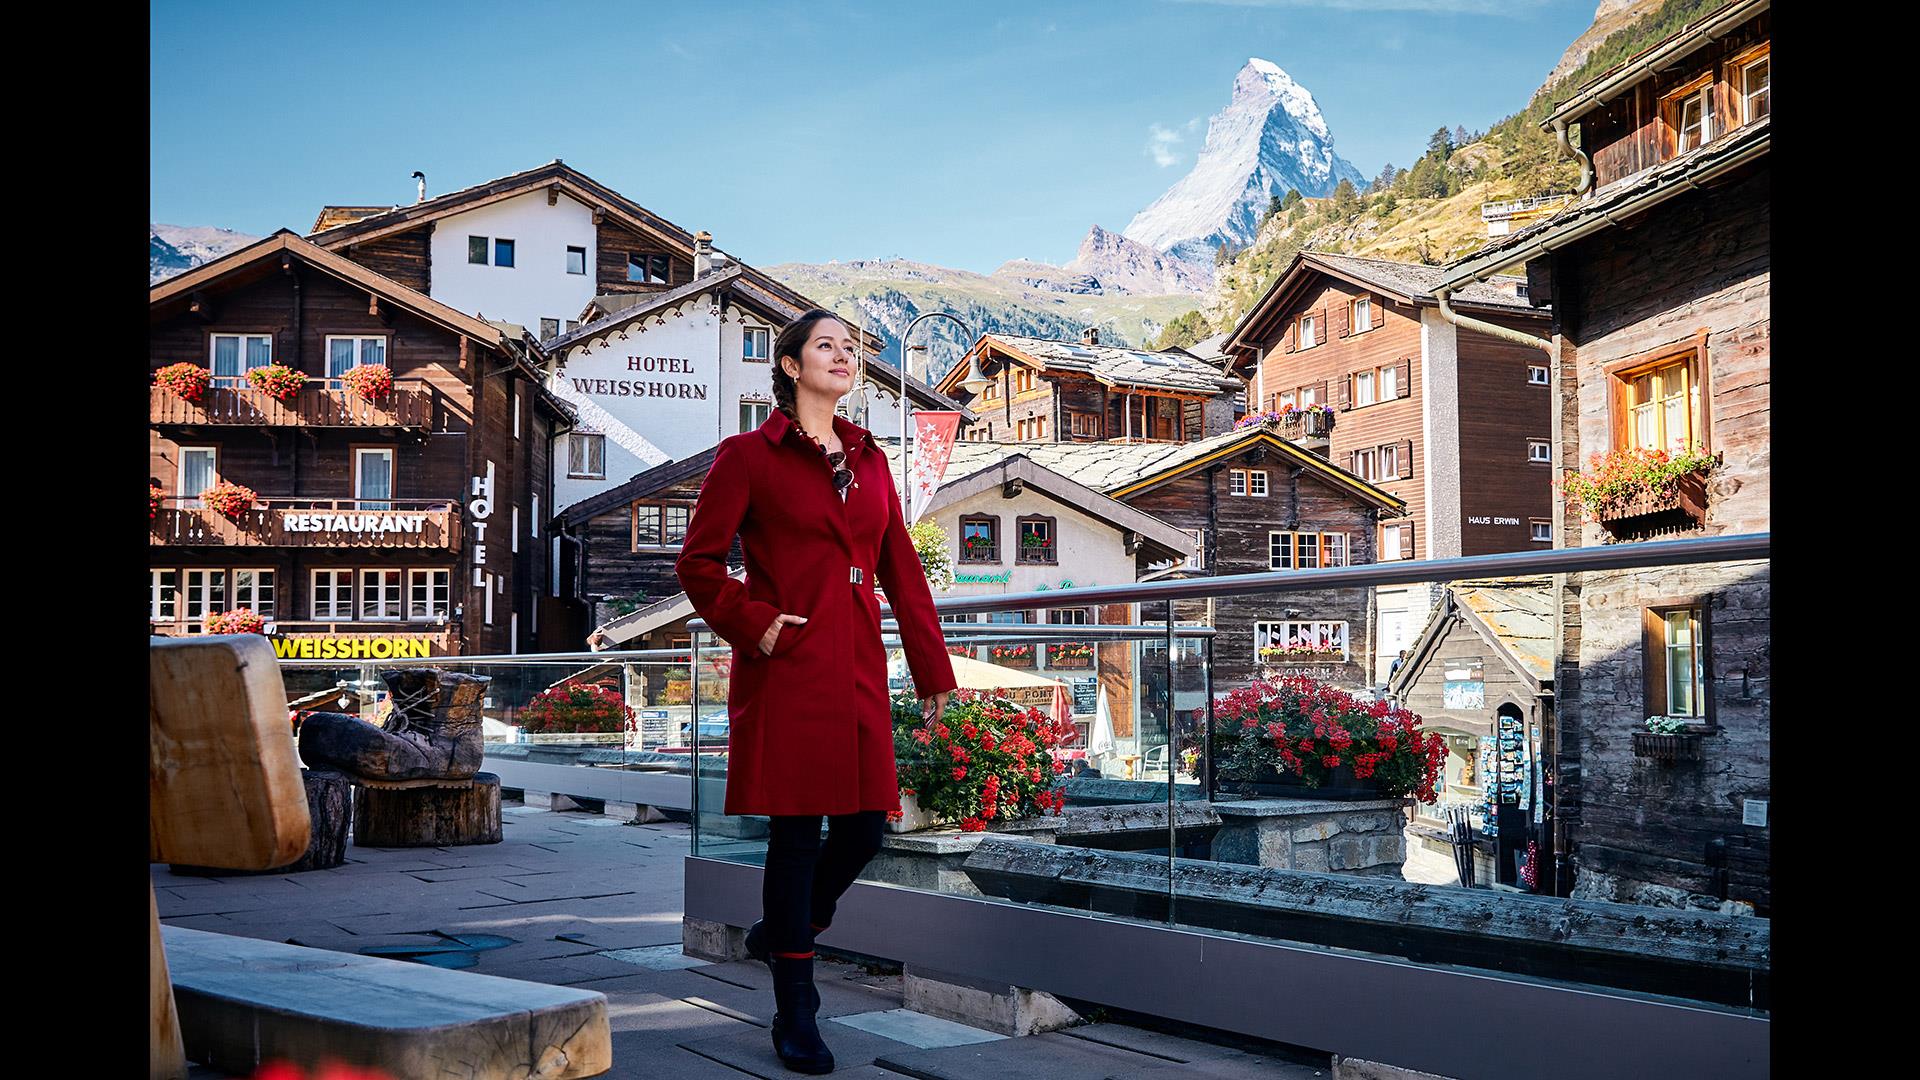 《愛遊世界》瑞士篇 EP16 節目簡介：舊城之美、走入冰川世界